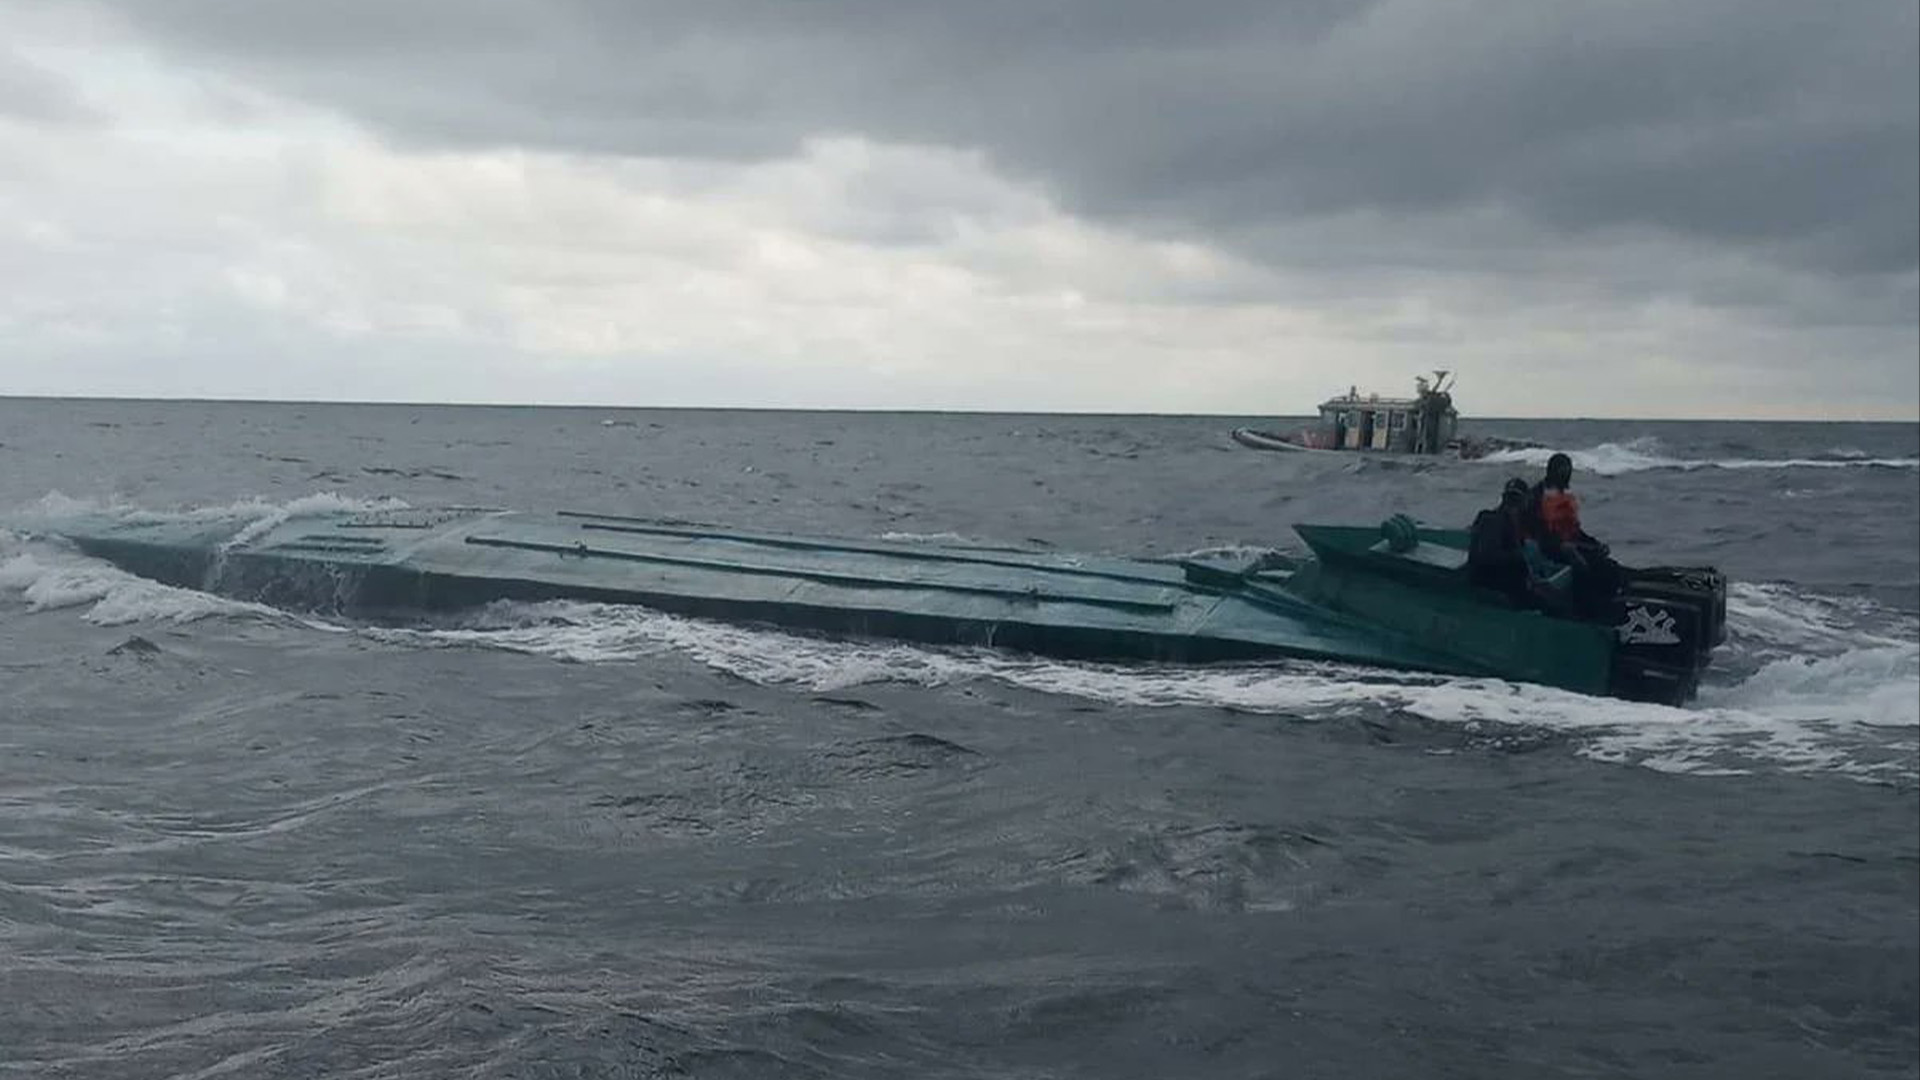 Los narcosubmarinos son una de las opciones usadas por los traficantes de droga para mover su mercancía de forma barata por los océanos (Foto: Twitter@yelvergomez)